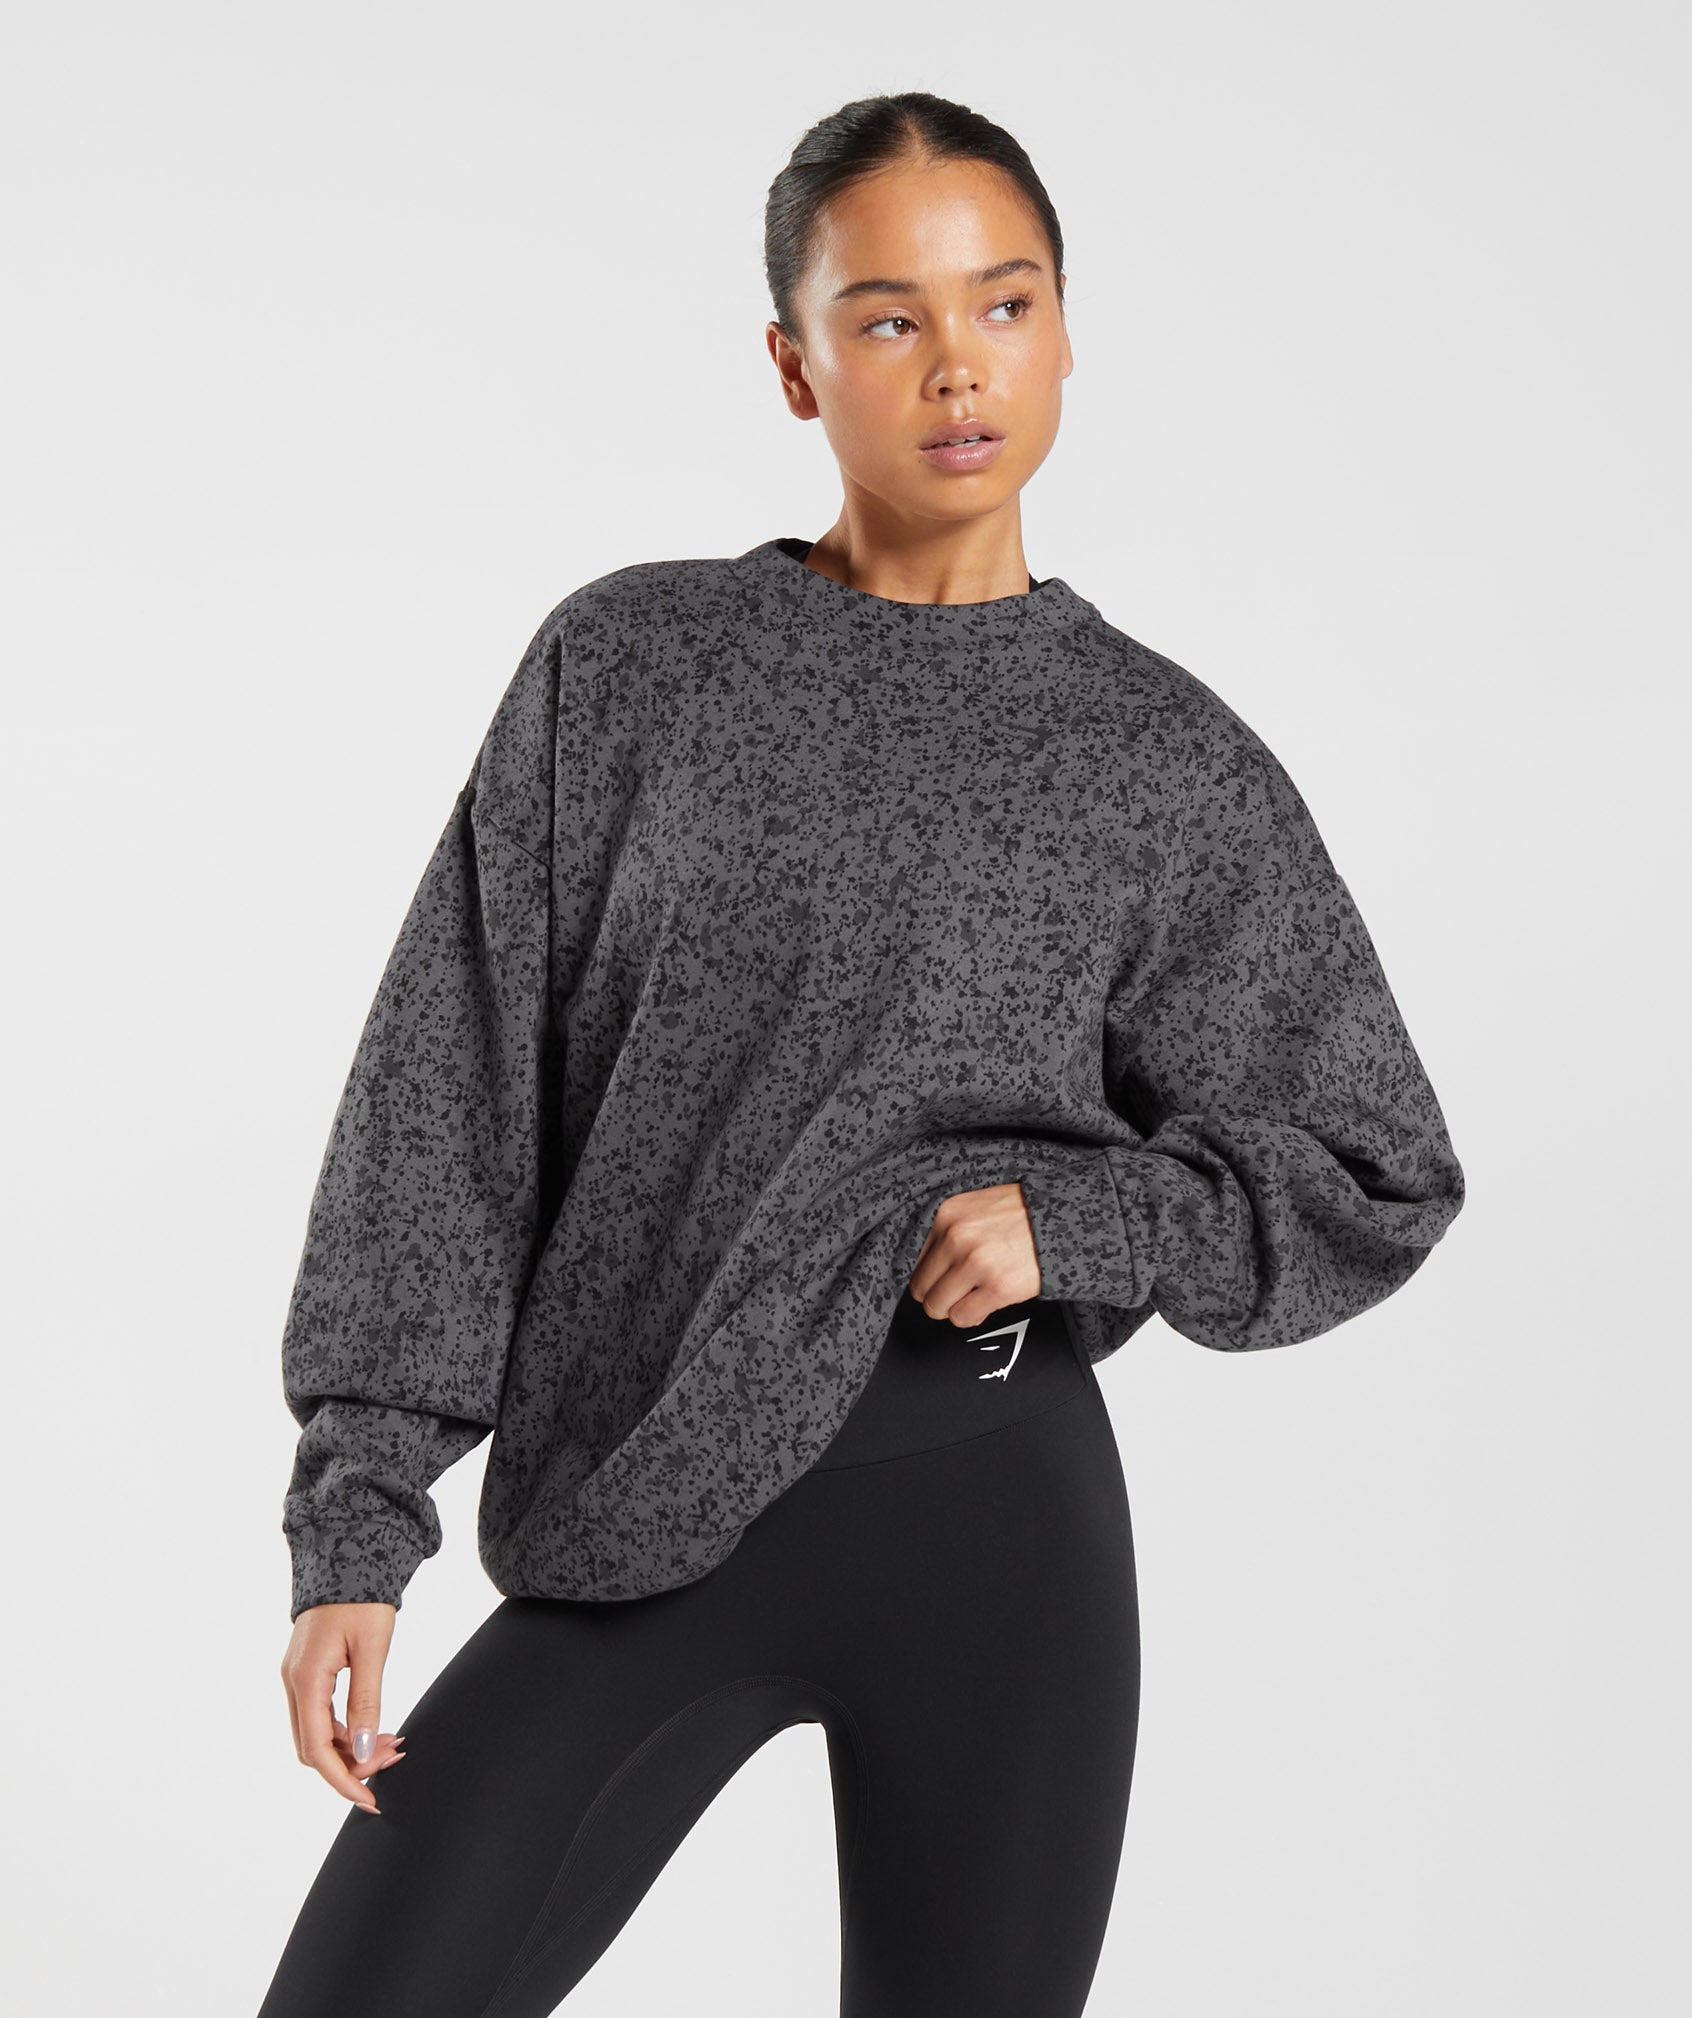 Mineral Print Sweatshirt in Silhouette Grey